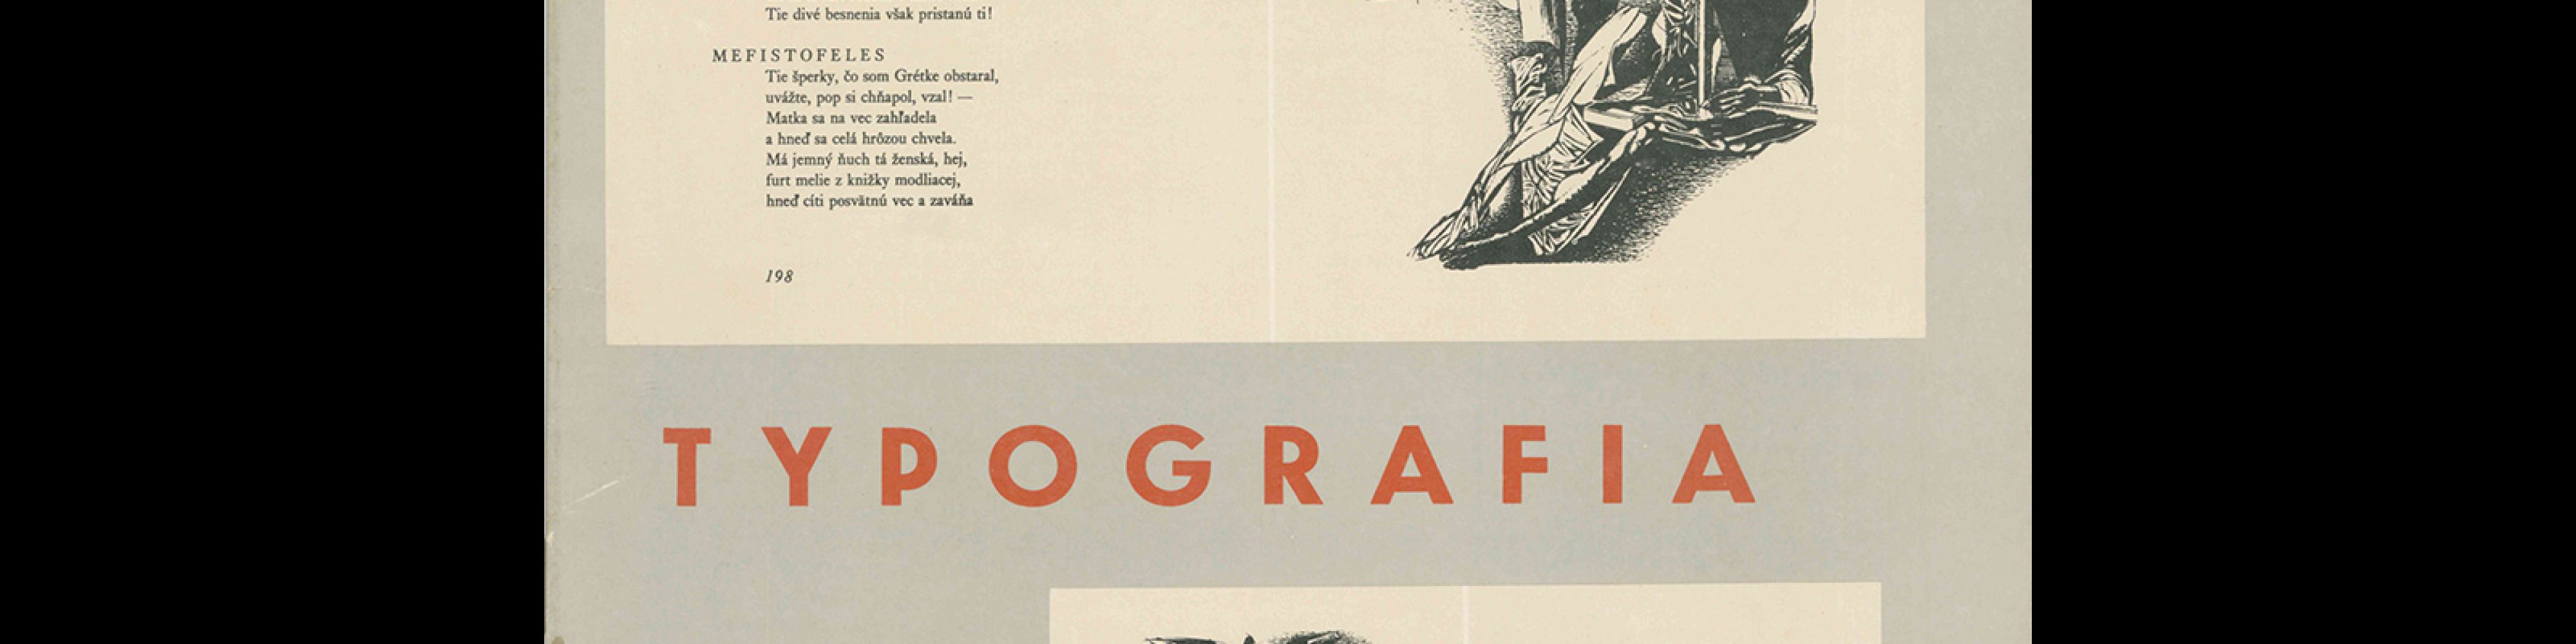 Typografia, ročník 71, 03, 1968. Cover by Dušan Šulc, with the use of illustrations by Vincent Hložník.